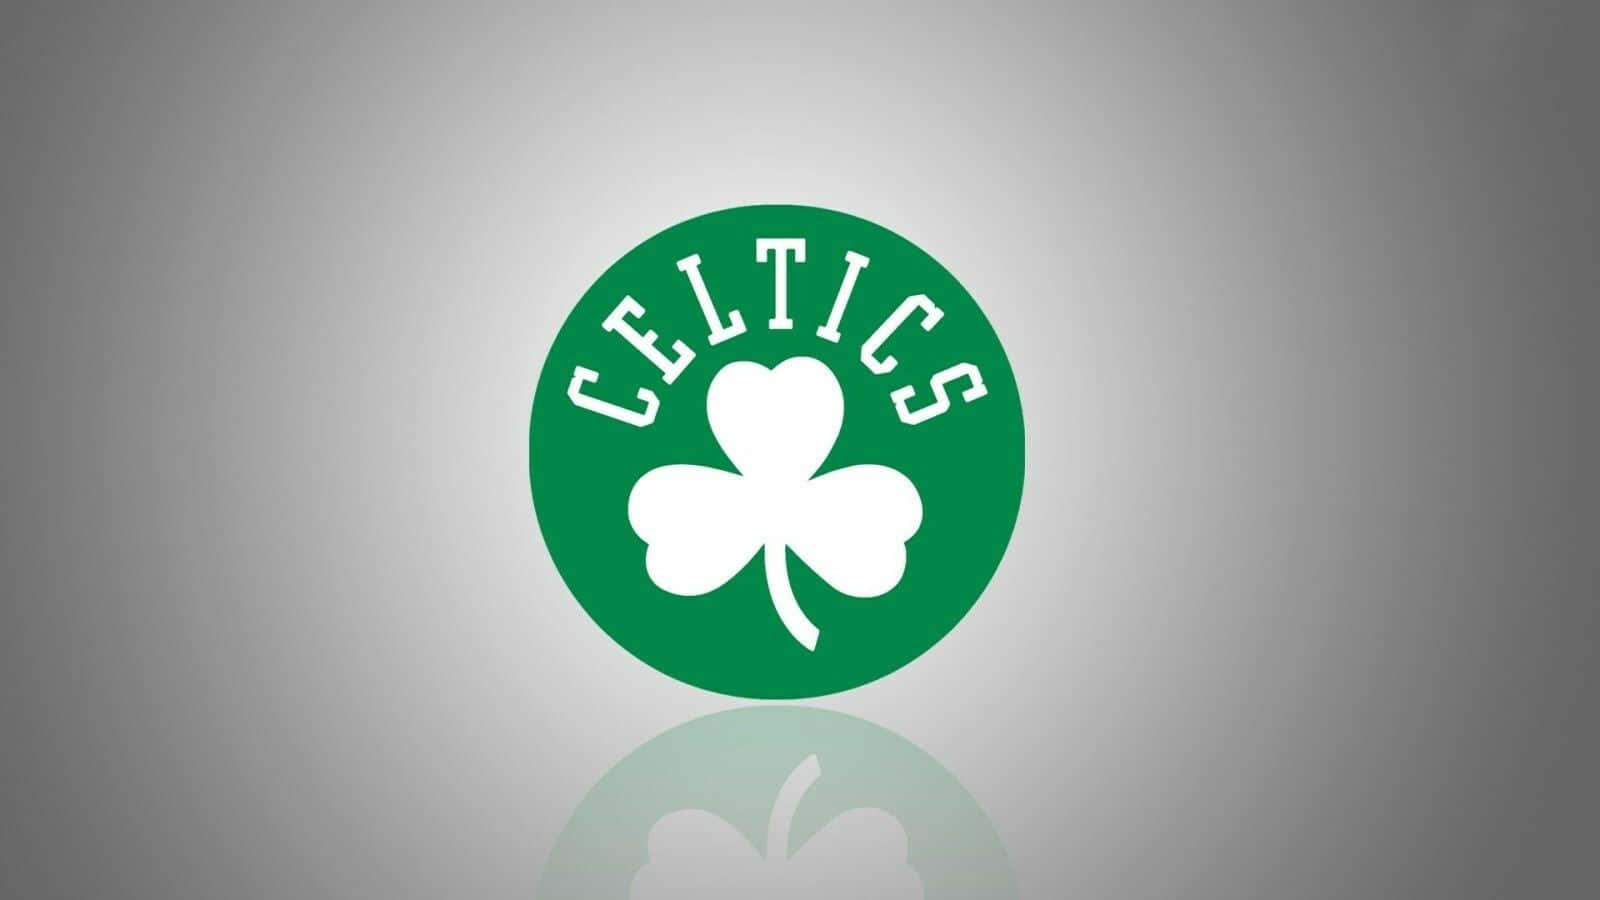 Logotipode Trébol Verde De Los Celtics. Fondo de pantalla